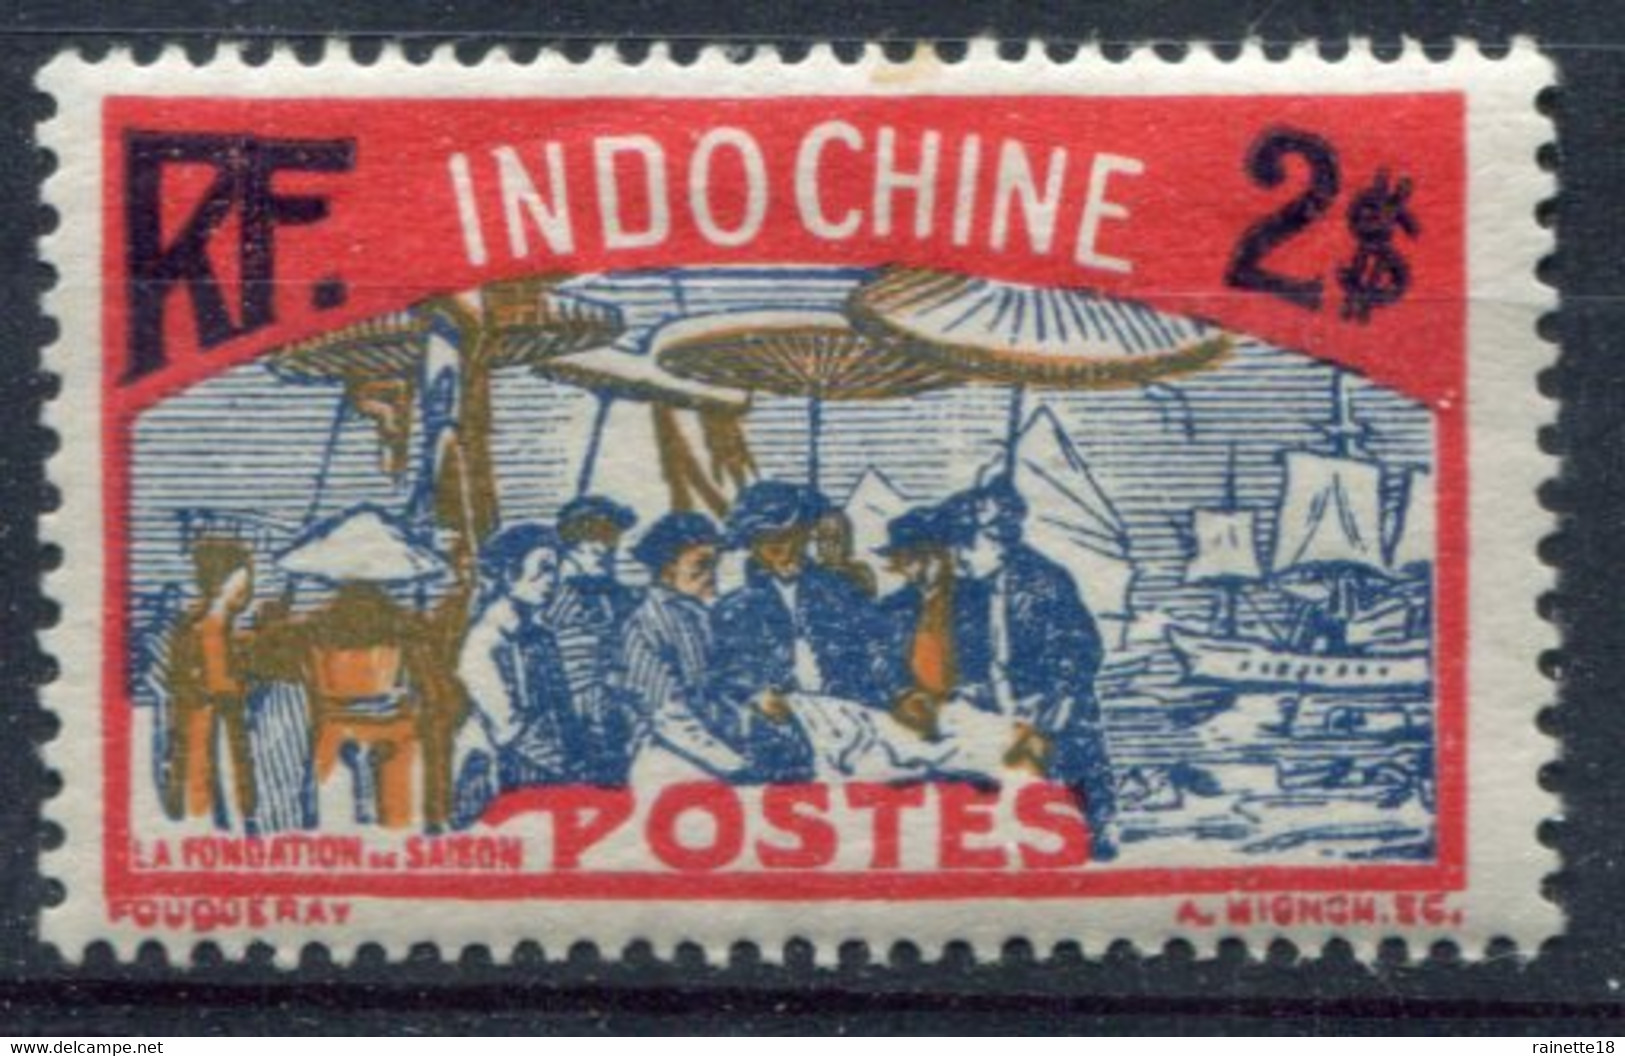 Indochine              146 * - Unused Stamps